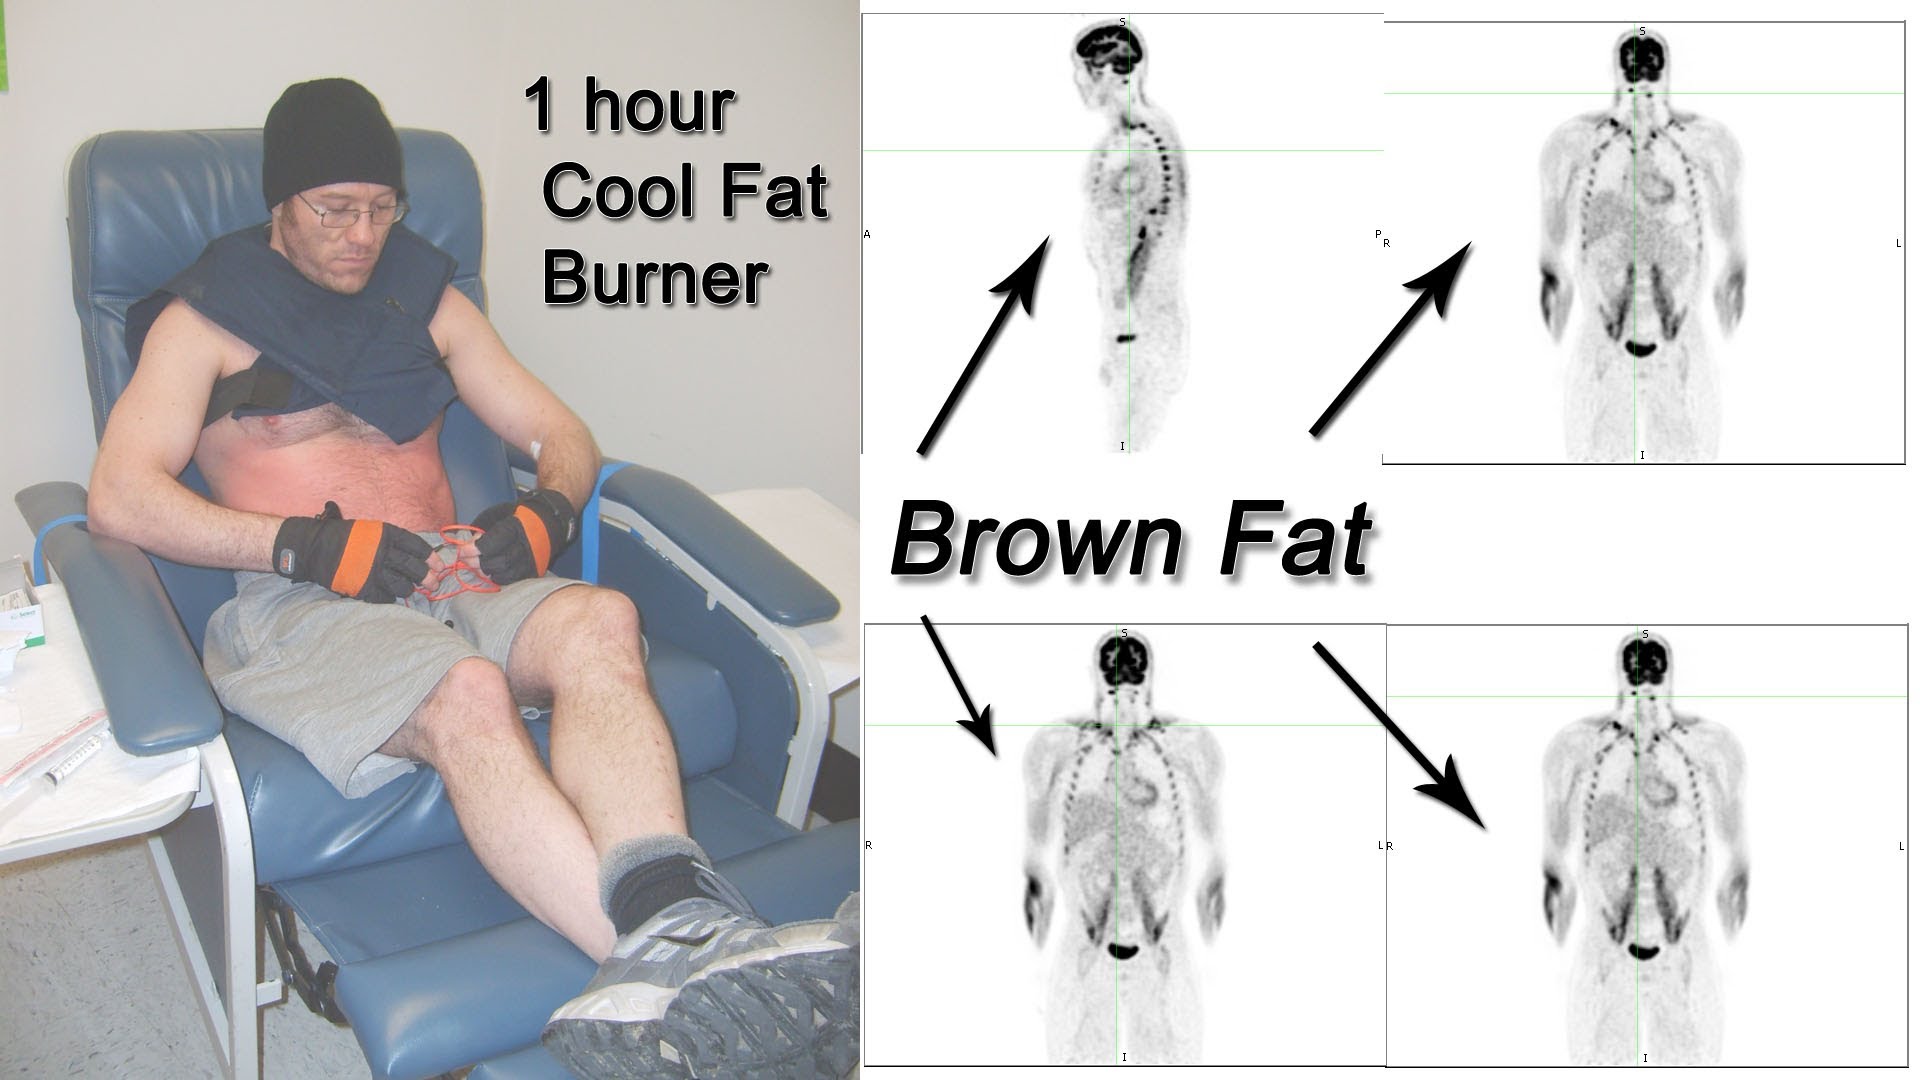 The Cool Fat Burner activates brown fat! - Cool Fat Burner, LLC